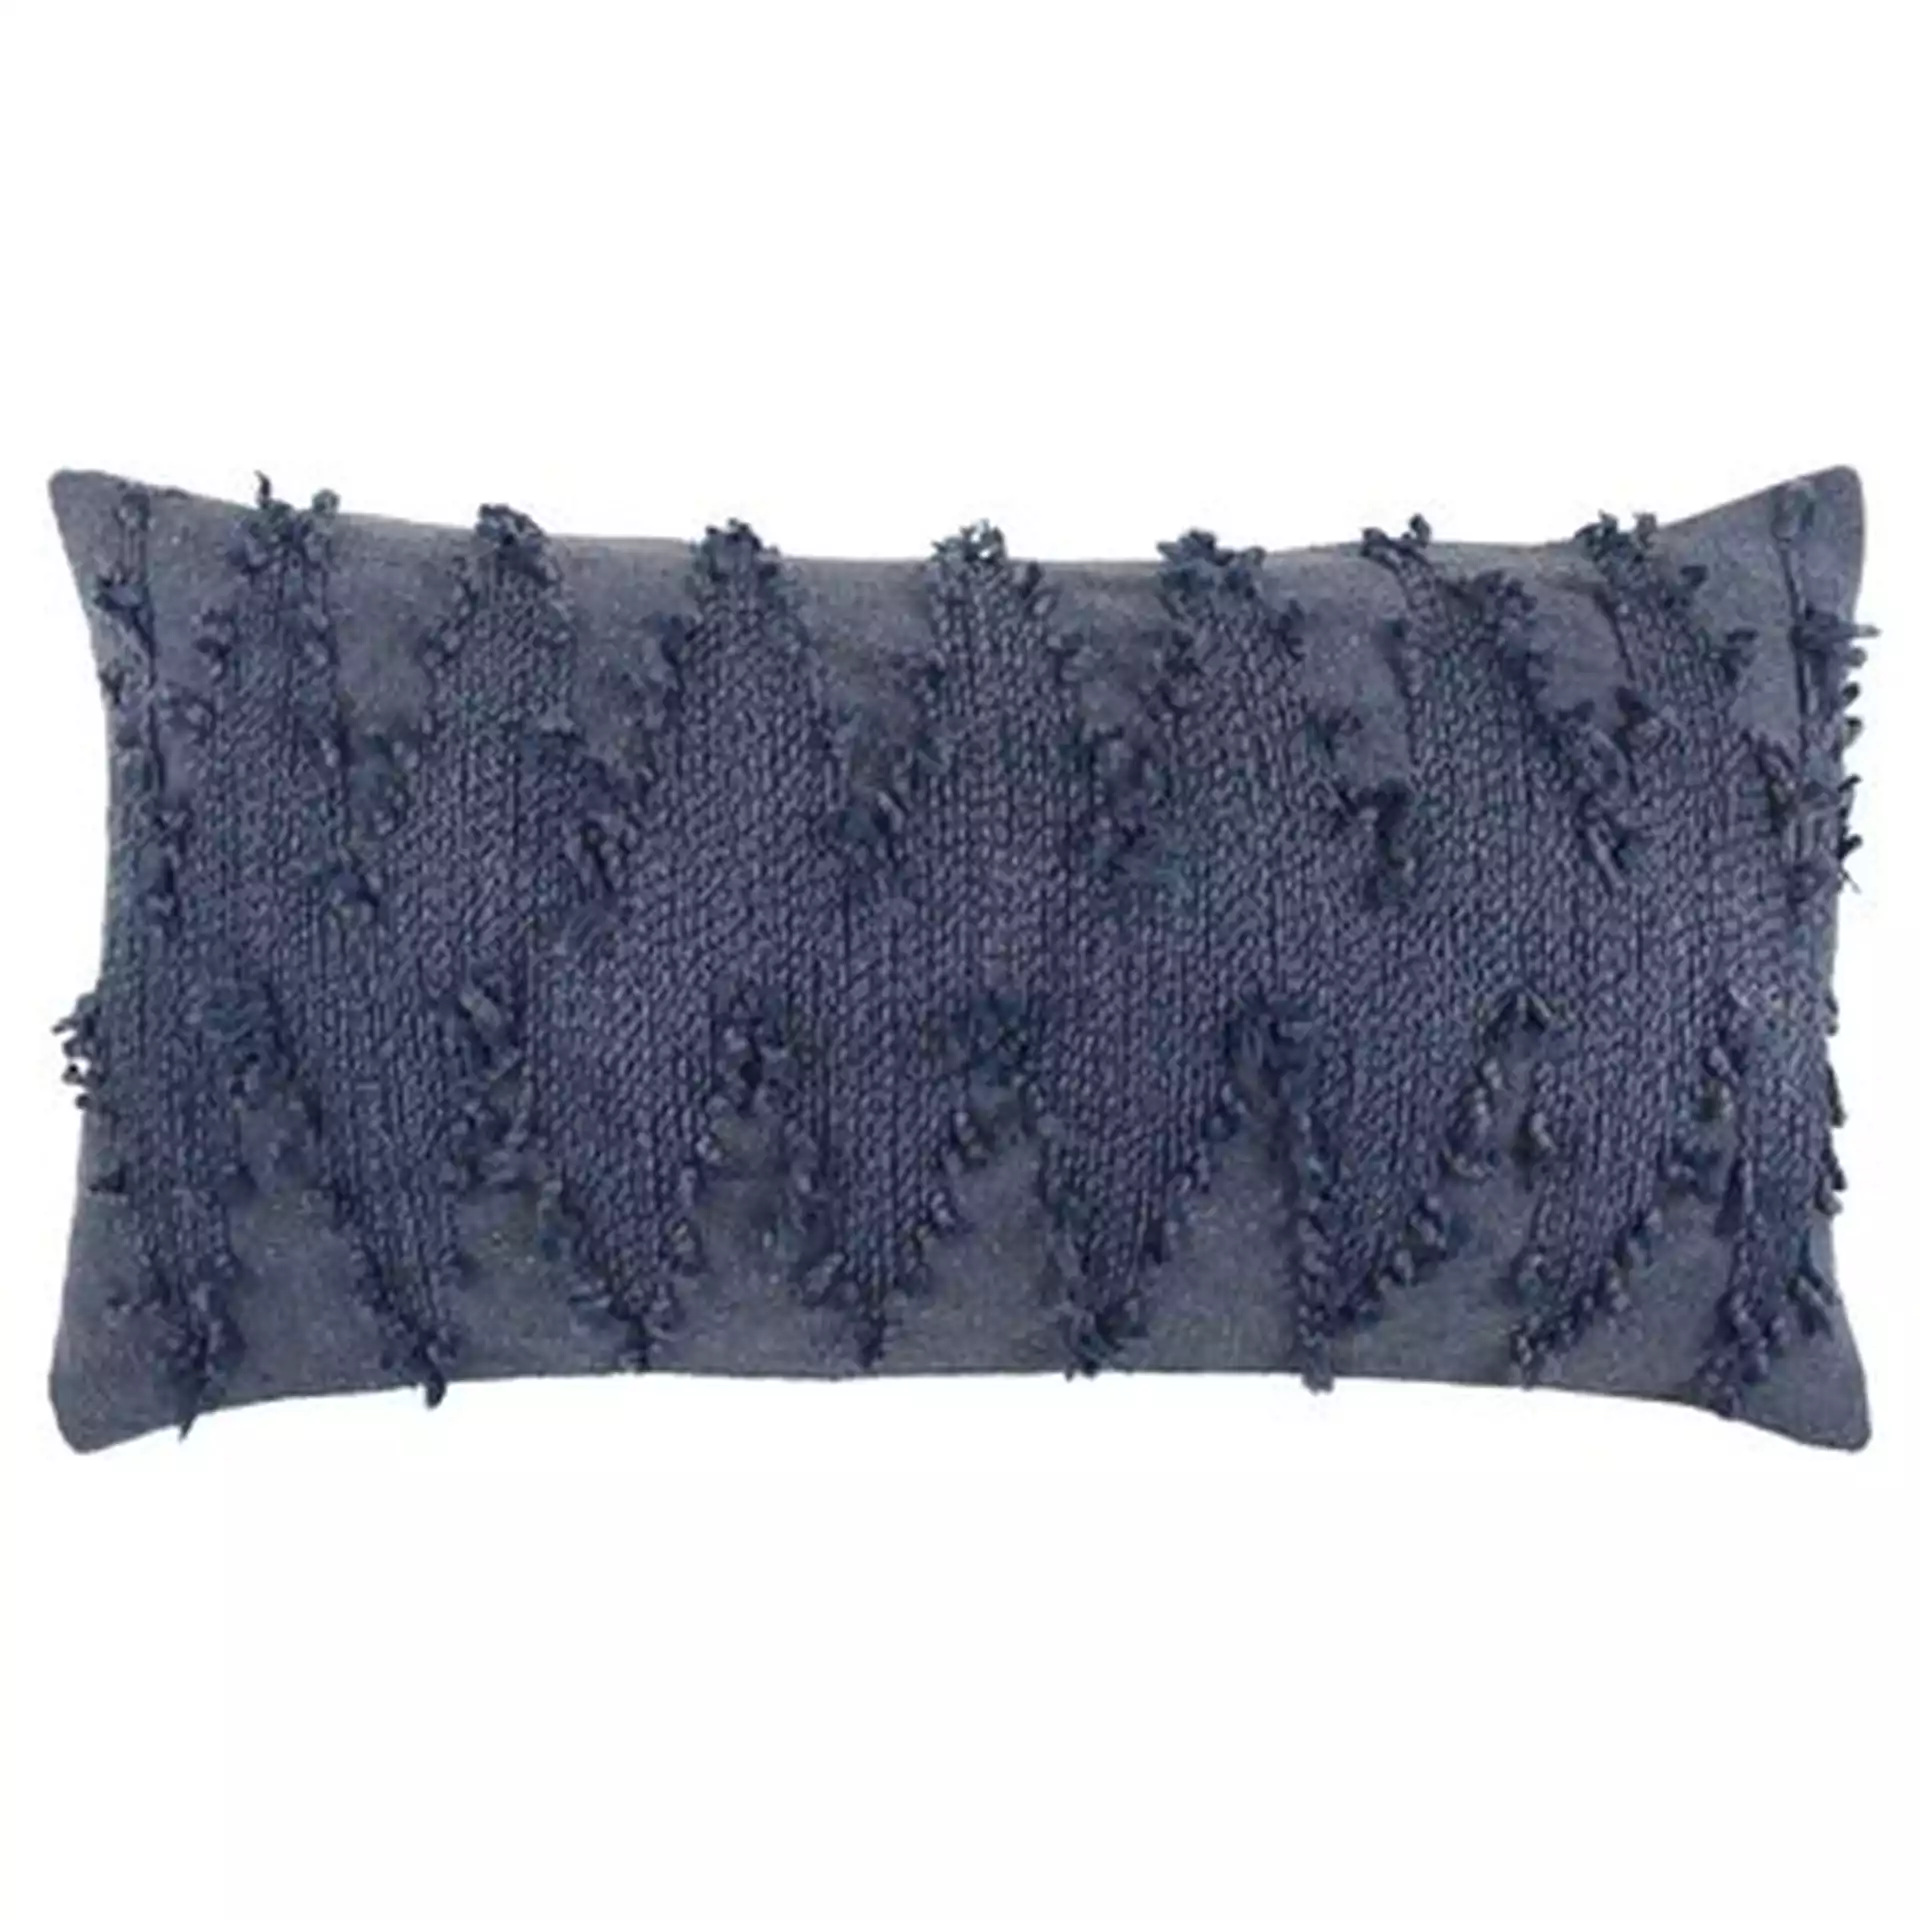 Horrell Cotton Lumbar Pillow Cover & Insert, Blue, 26" x 14"